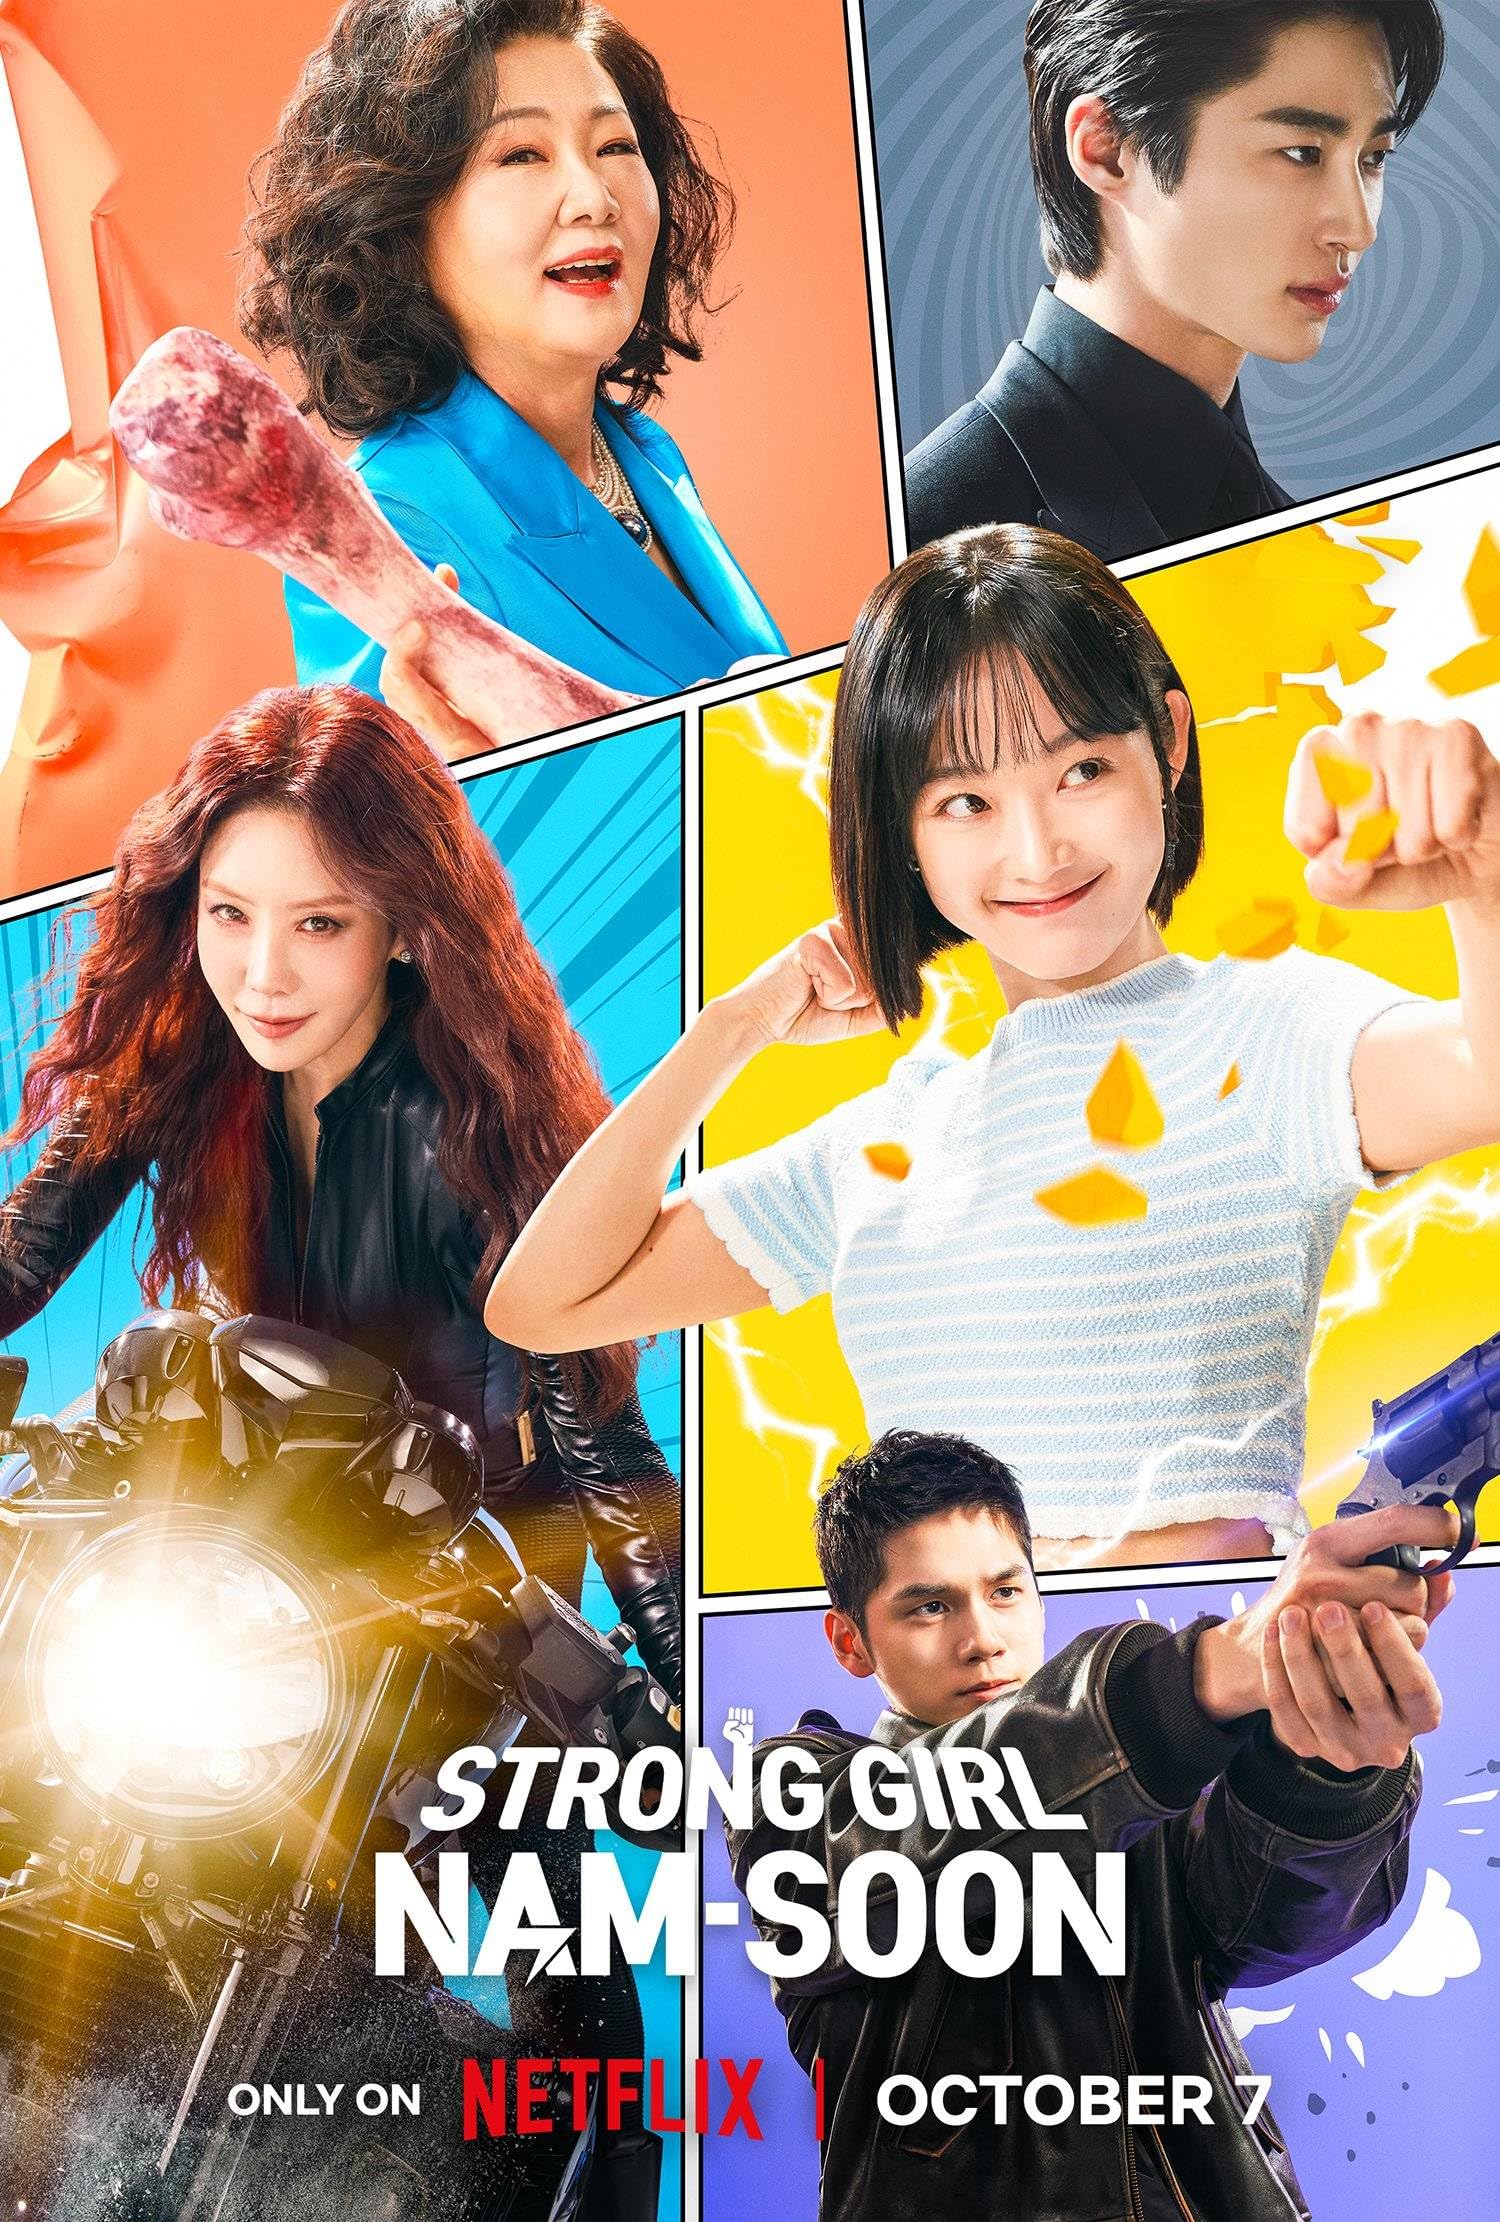 مسلسل الفتاة القوية نام سون Strong Girl Nam-soon الحلقة 3 مترجمة